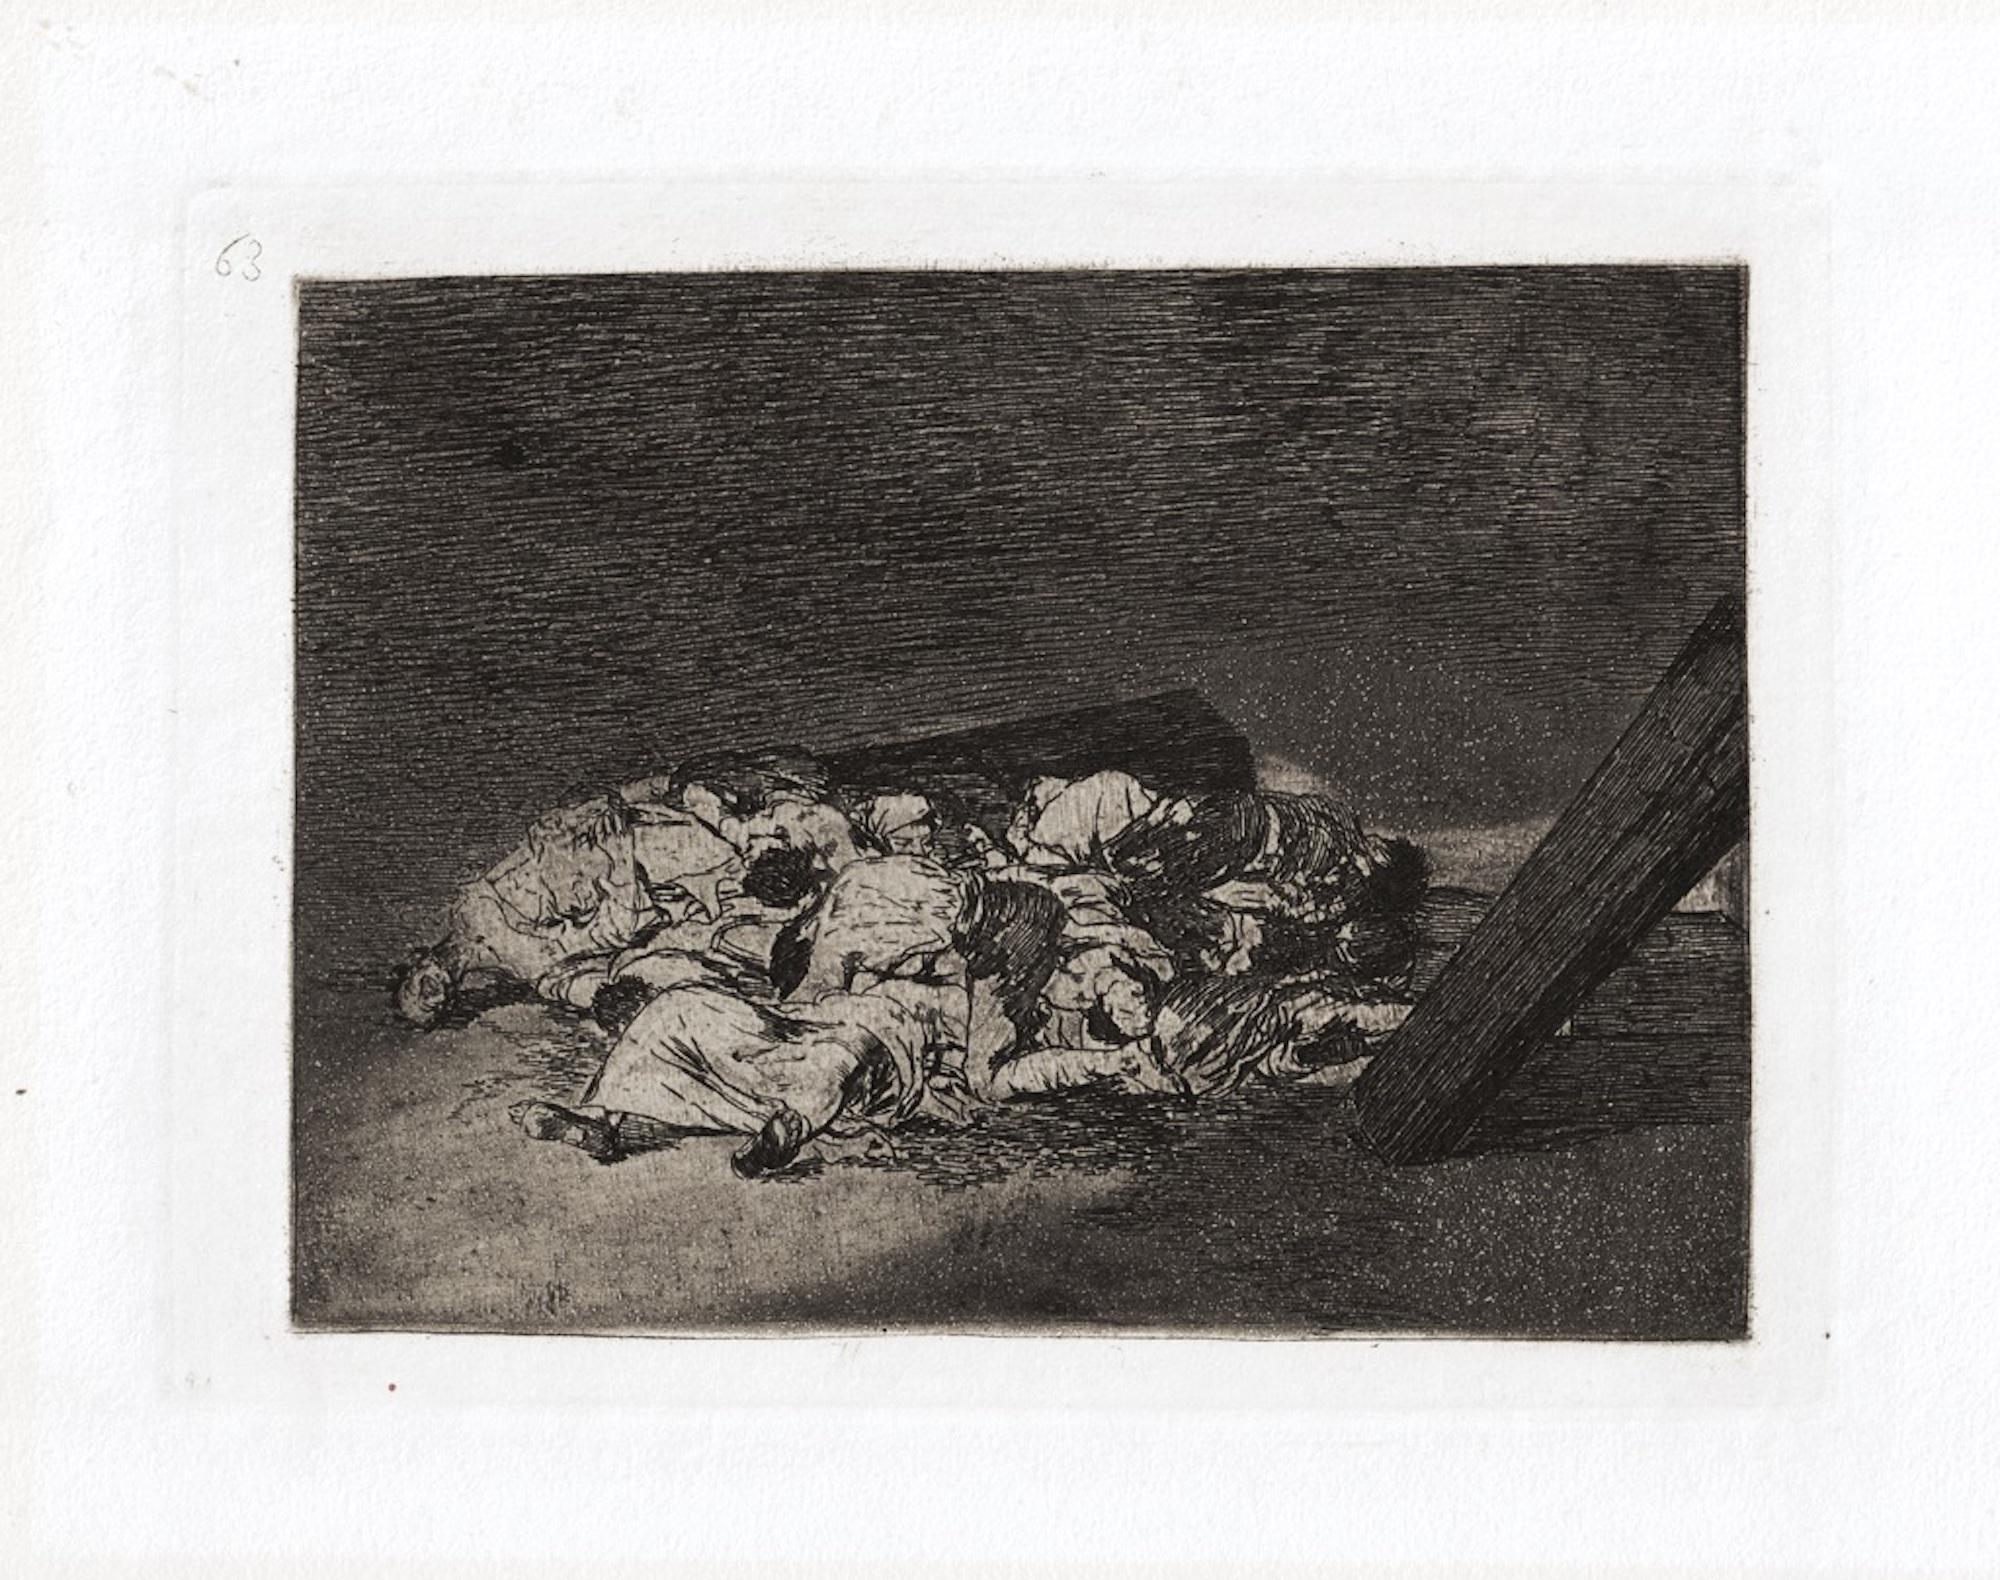 Muertos recogidos ist ein Originalkunstwerk des großen spanischen Künstlers Francisco Goya aus dem Jahr 1810. 

Original-Radierung auf Papier. 

Das Werk gehört zu der berühmten Serie "Los Desastres de la Guerra", die in den Jahren des Spanischen